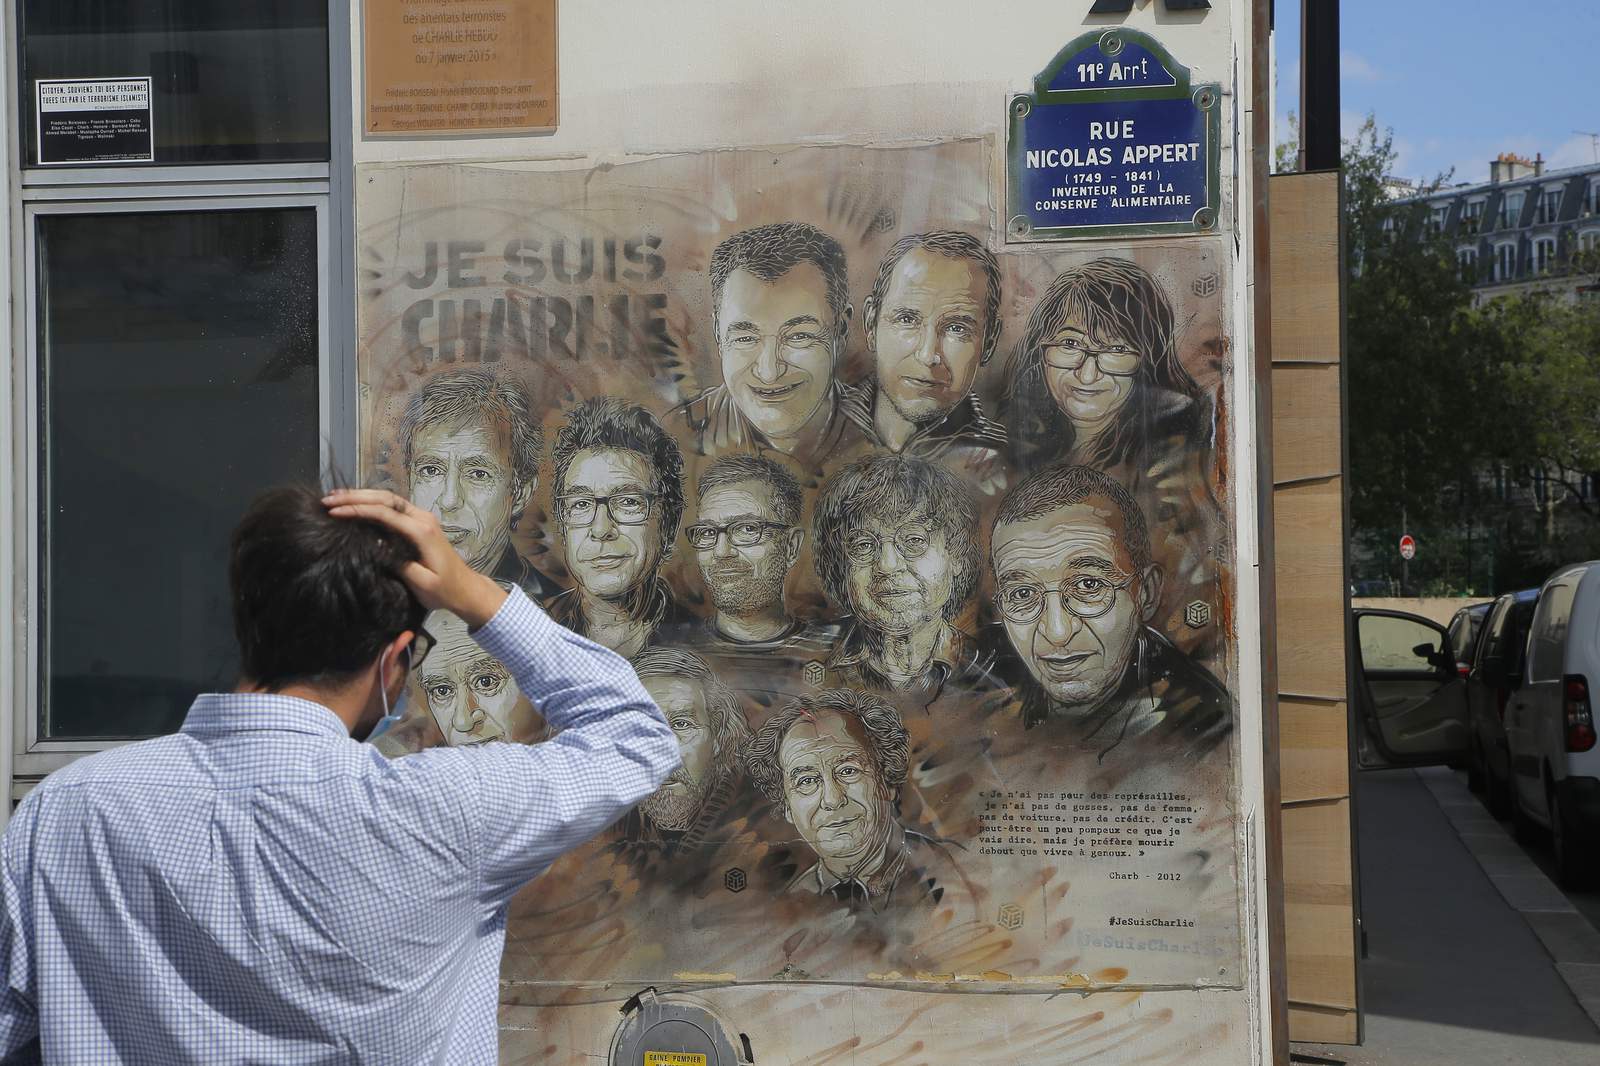 Charlie Hebdo artist seized by gunmen recalls sheer terror